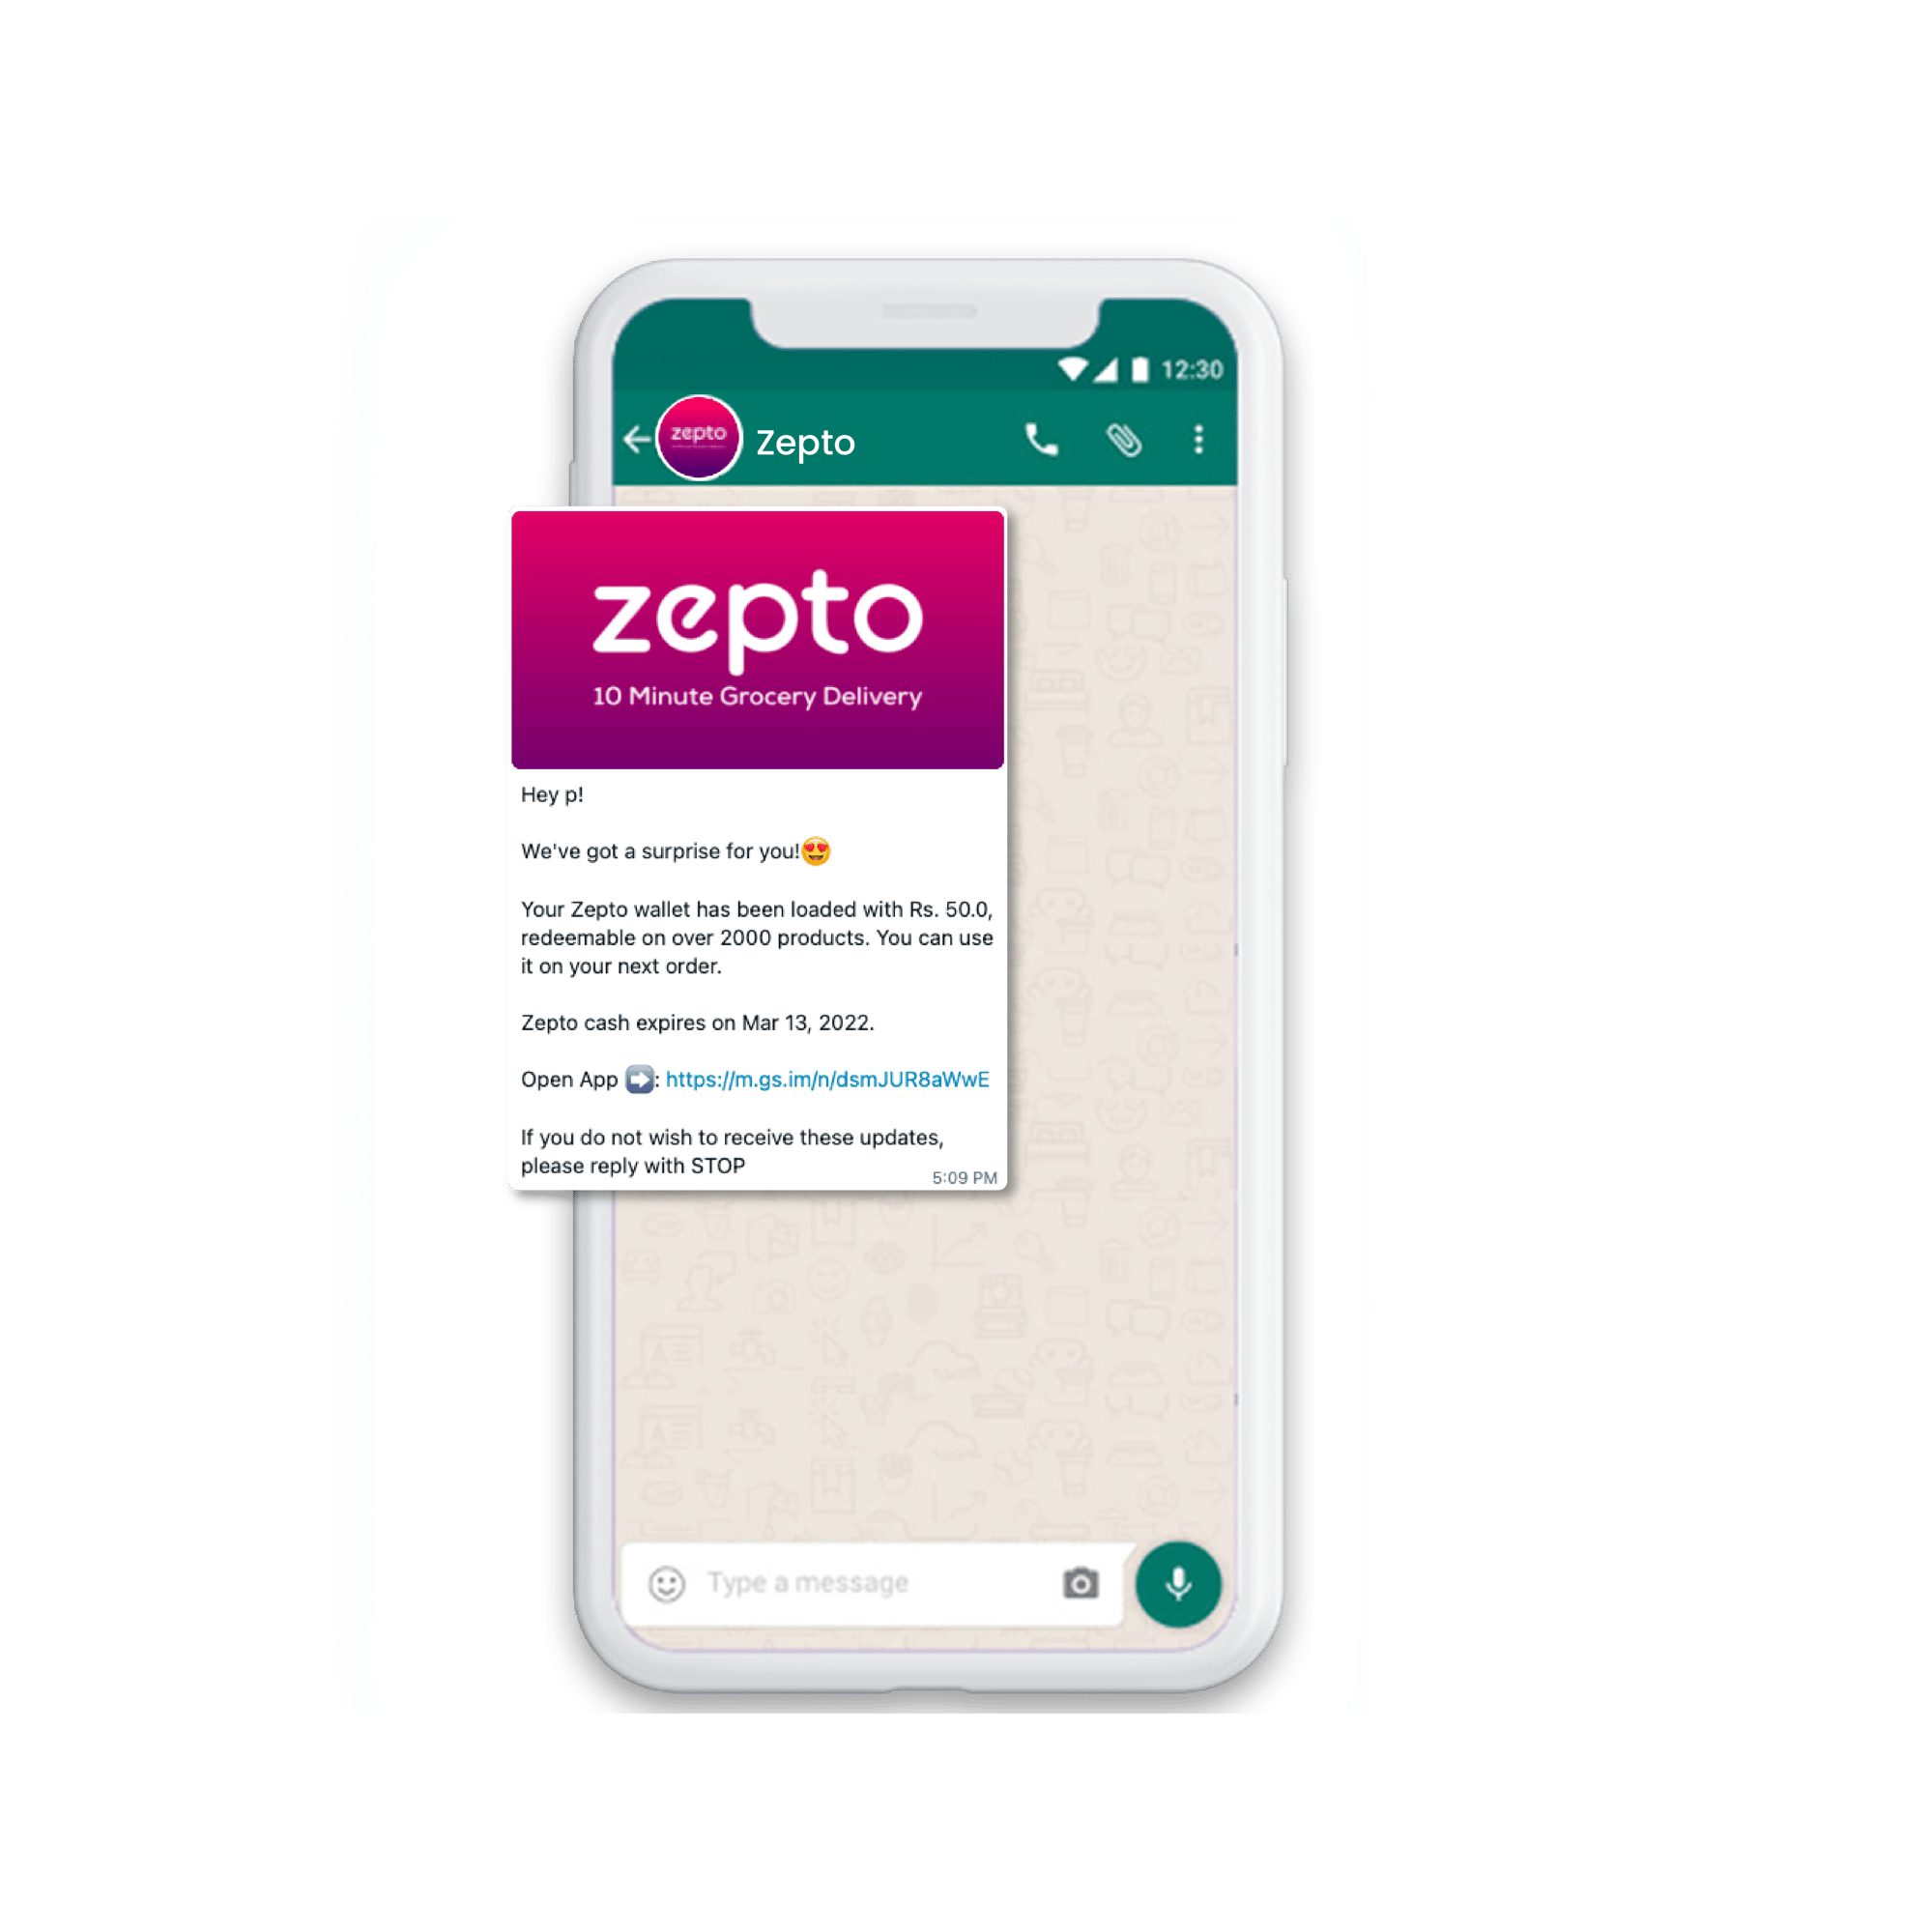 Zepto WhatsApp chat